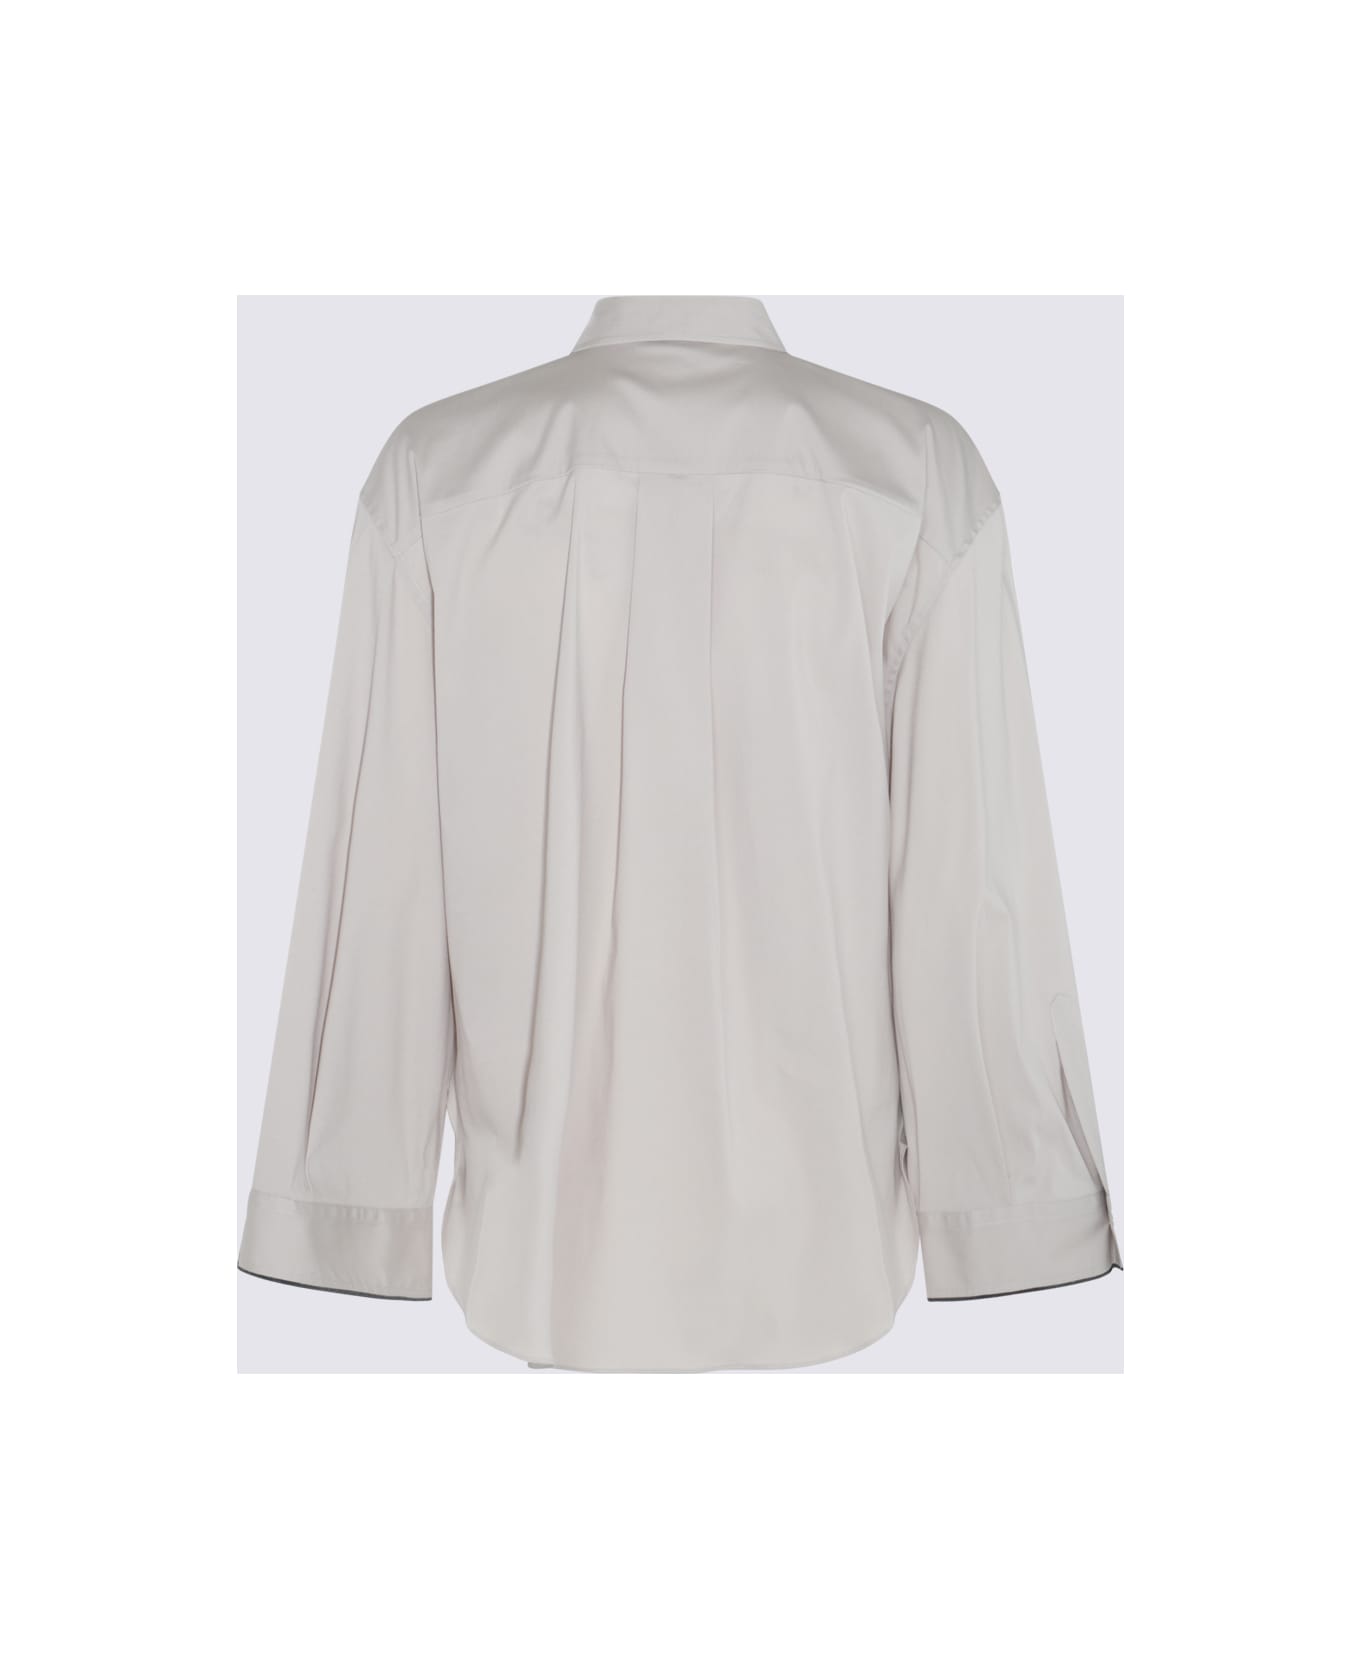 Brunello Cucinelli Grey Cotton Shirt - SAGE シャツ